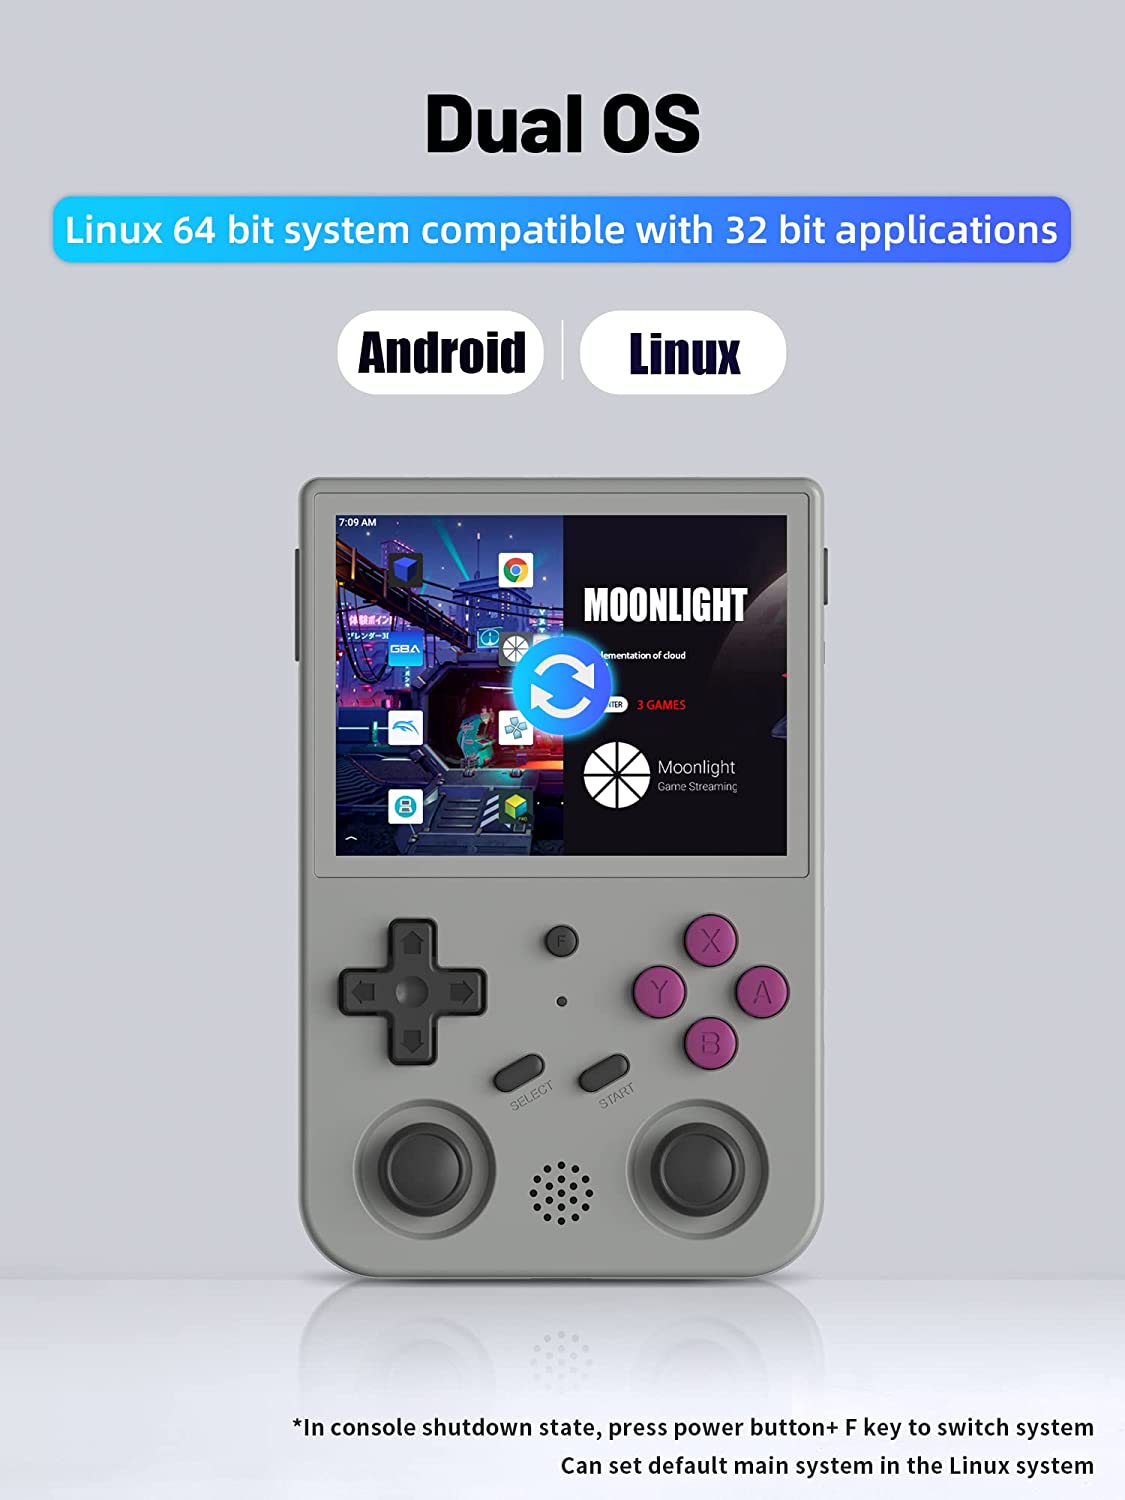 RG353V - Consola de juegos portátil de 3.5" visualización IPS de 640x480 CPU de alta resolución RK3566 Quad-Core OS Android 11 Linux 2G/64G+16G